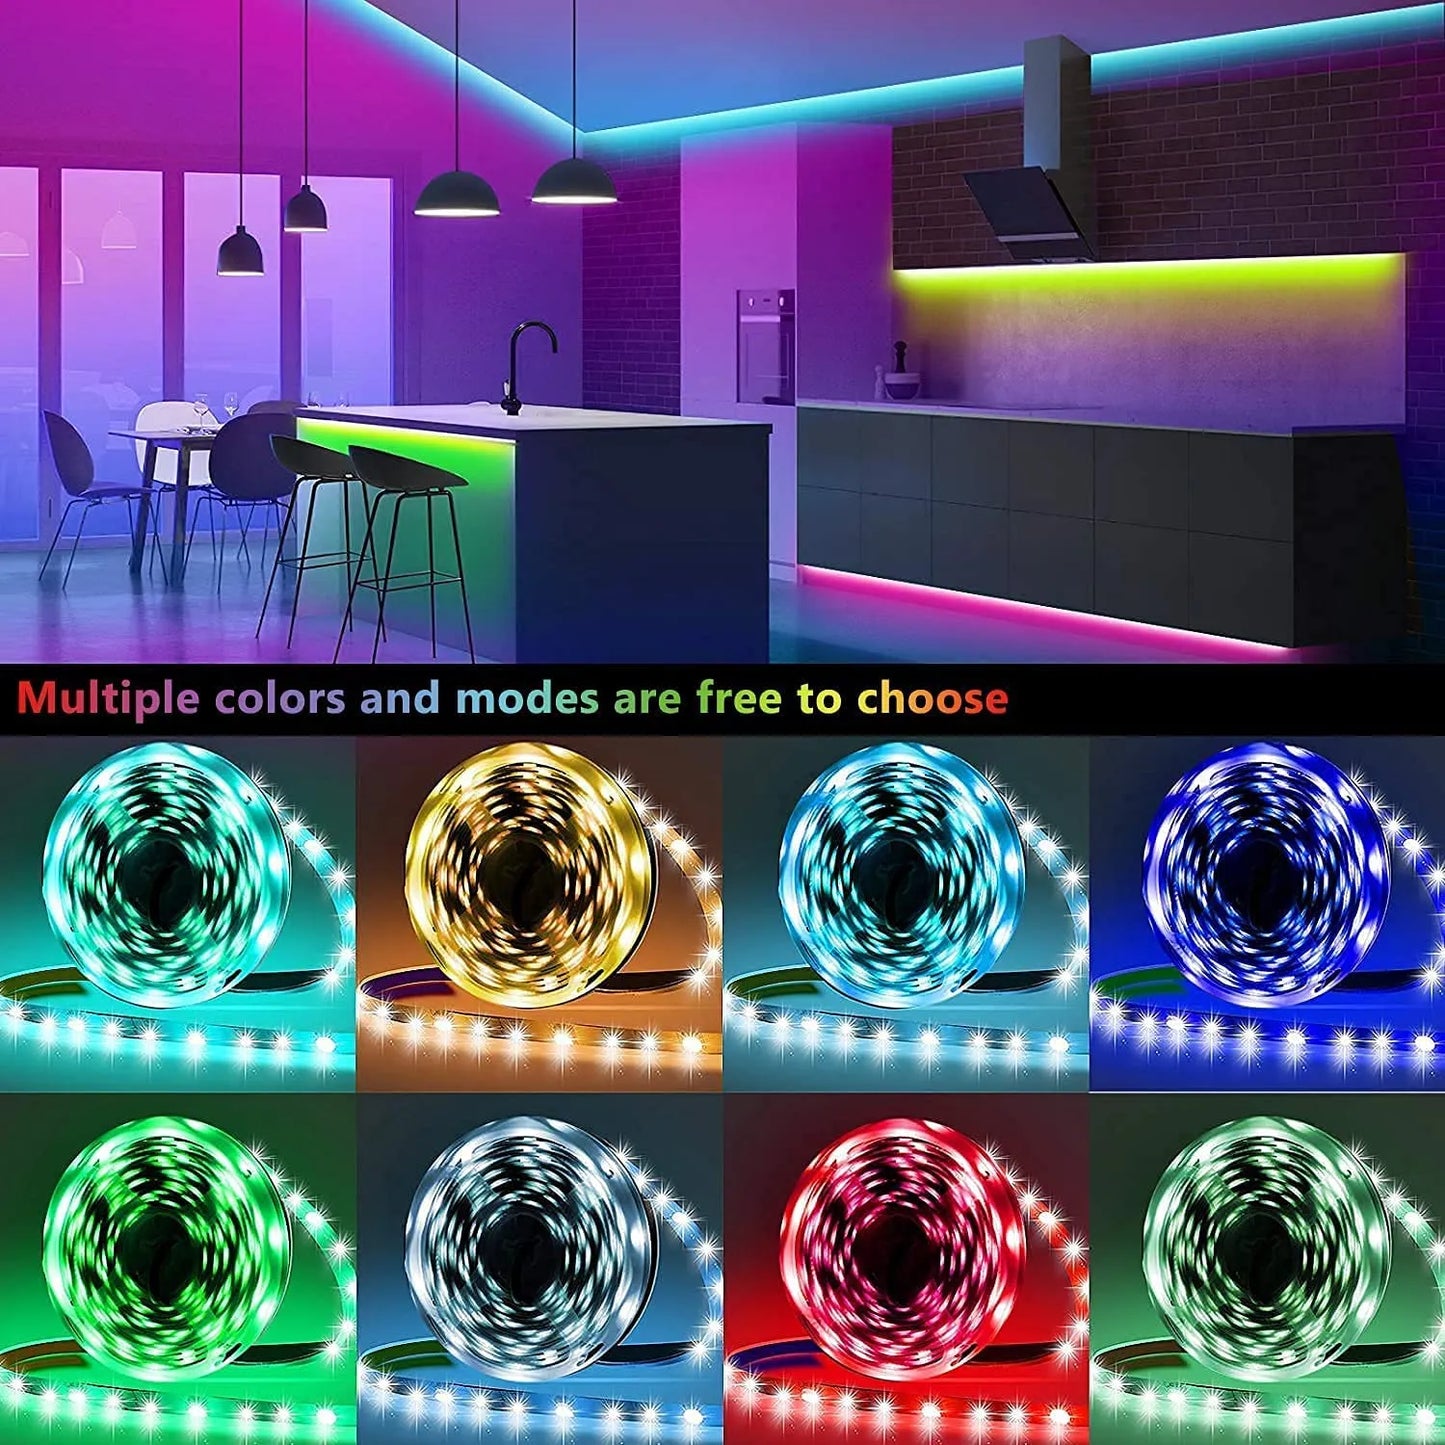 ColorRGB, светодиодная лента, 16 миллионов цветов с управлением через приложение